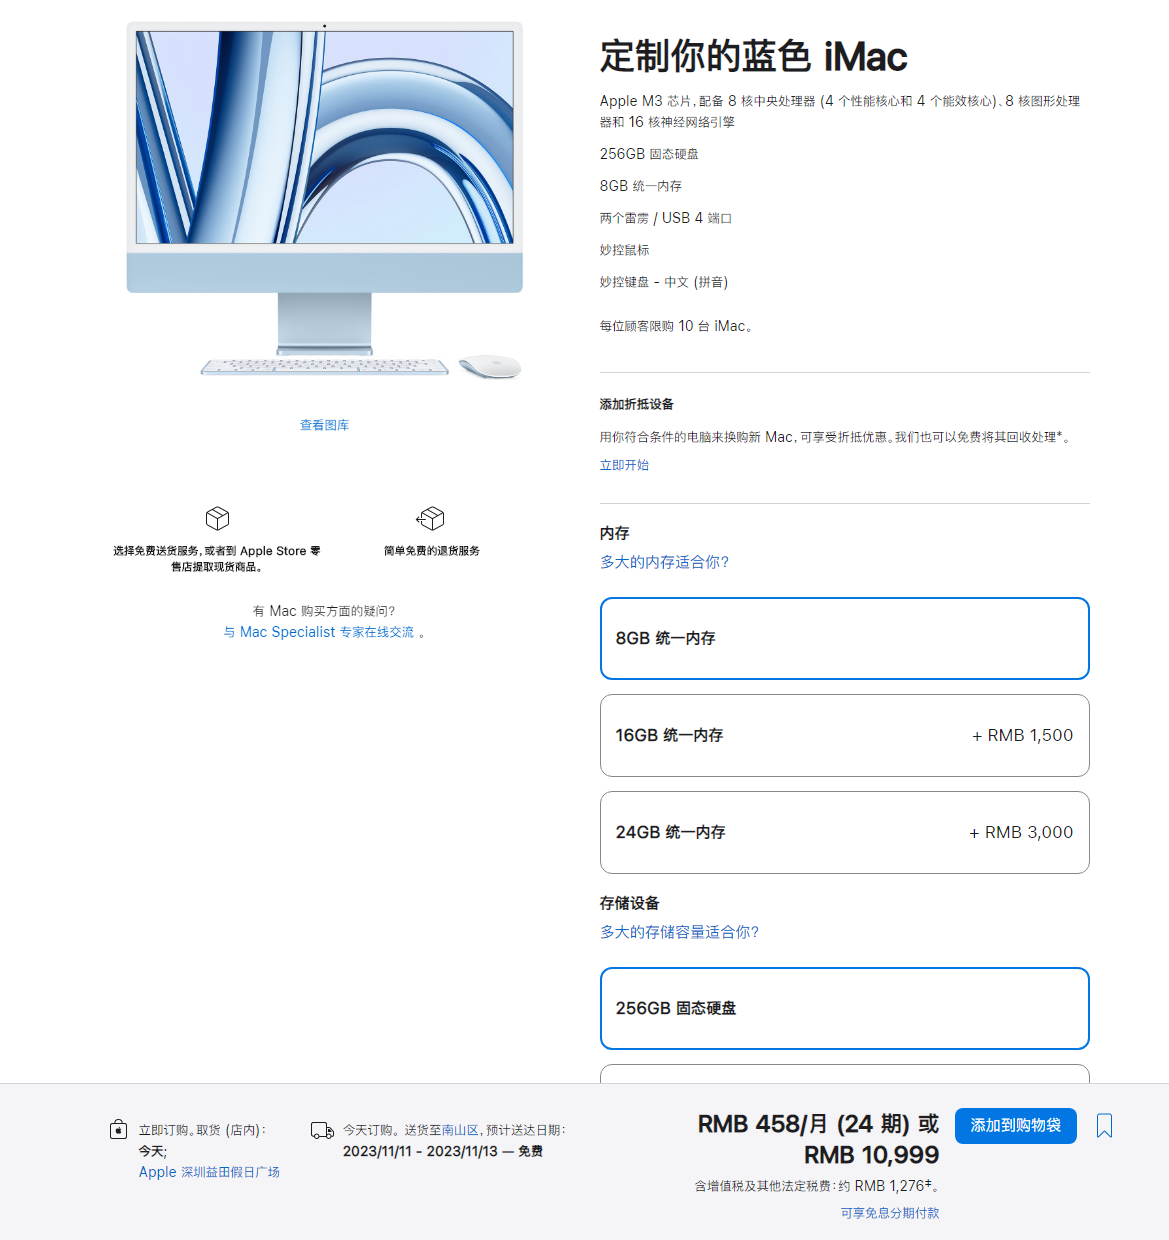 采用 M3 芯片的 MacBook Pro 和 iMac 今日正式发售